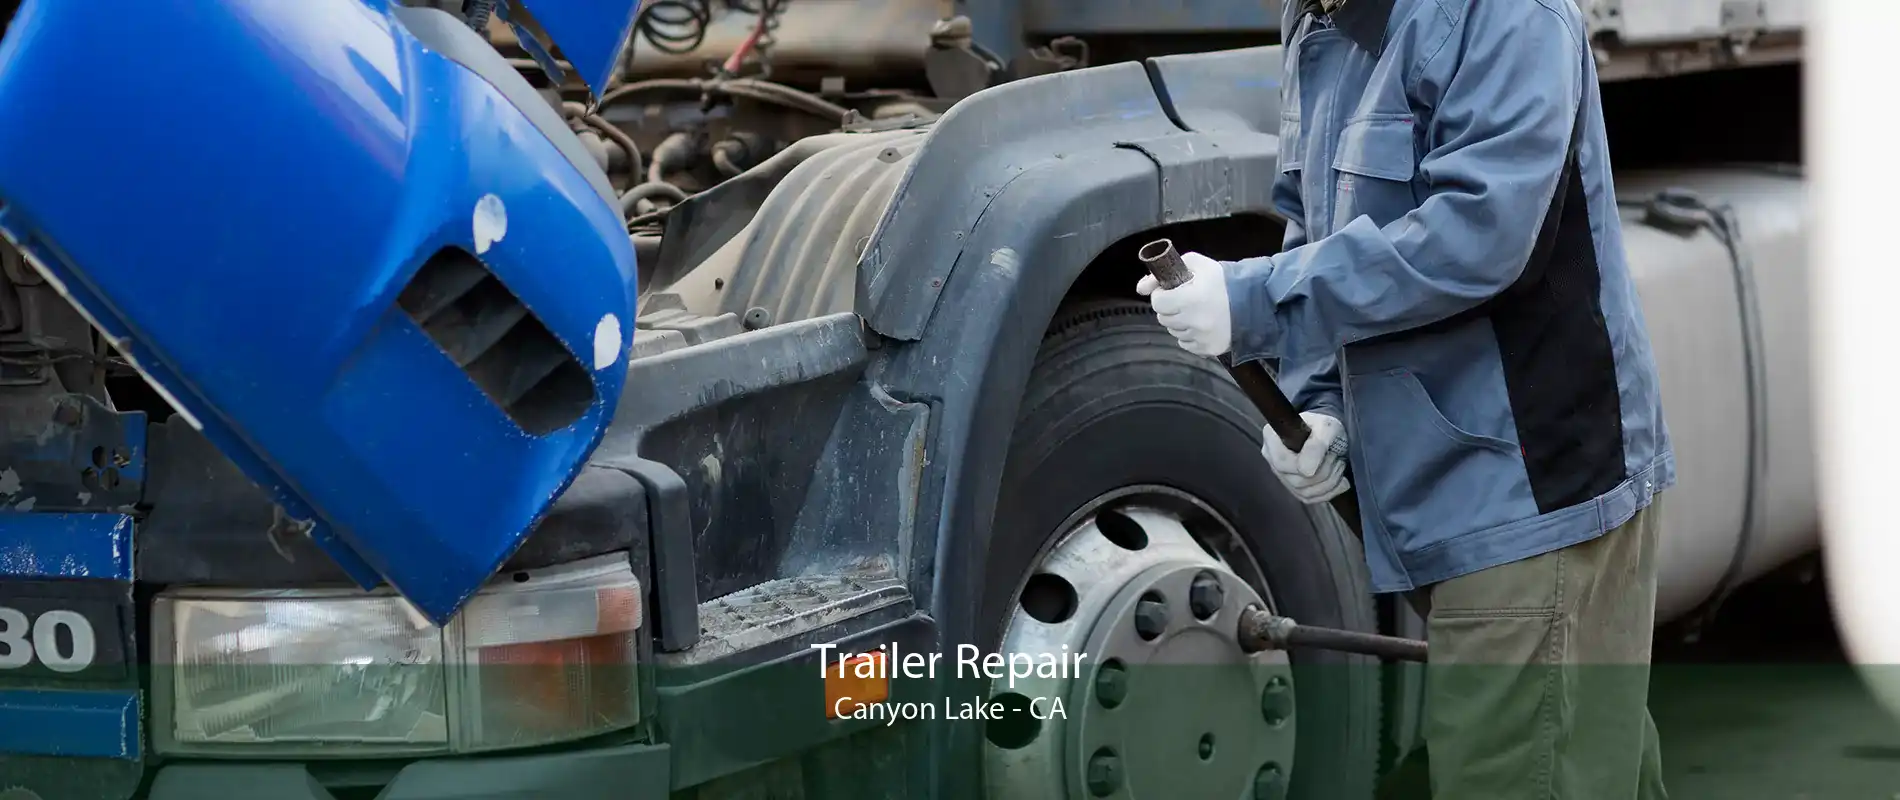 Trailer Repair Canyon Lake - CA